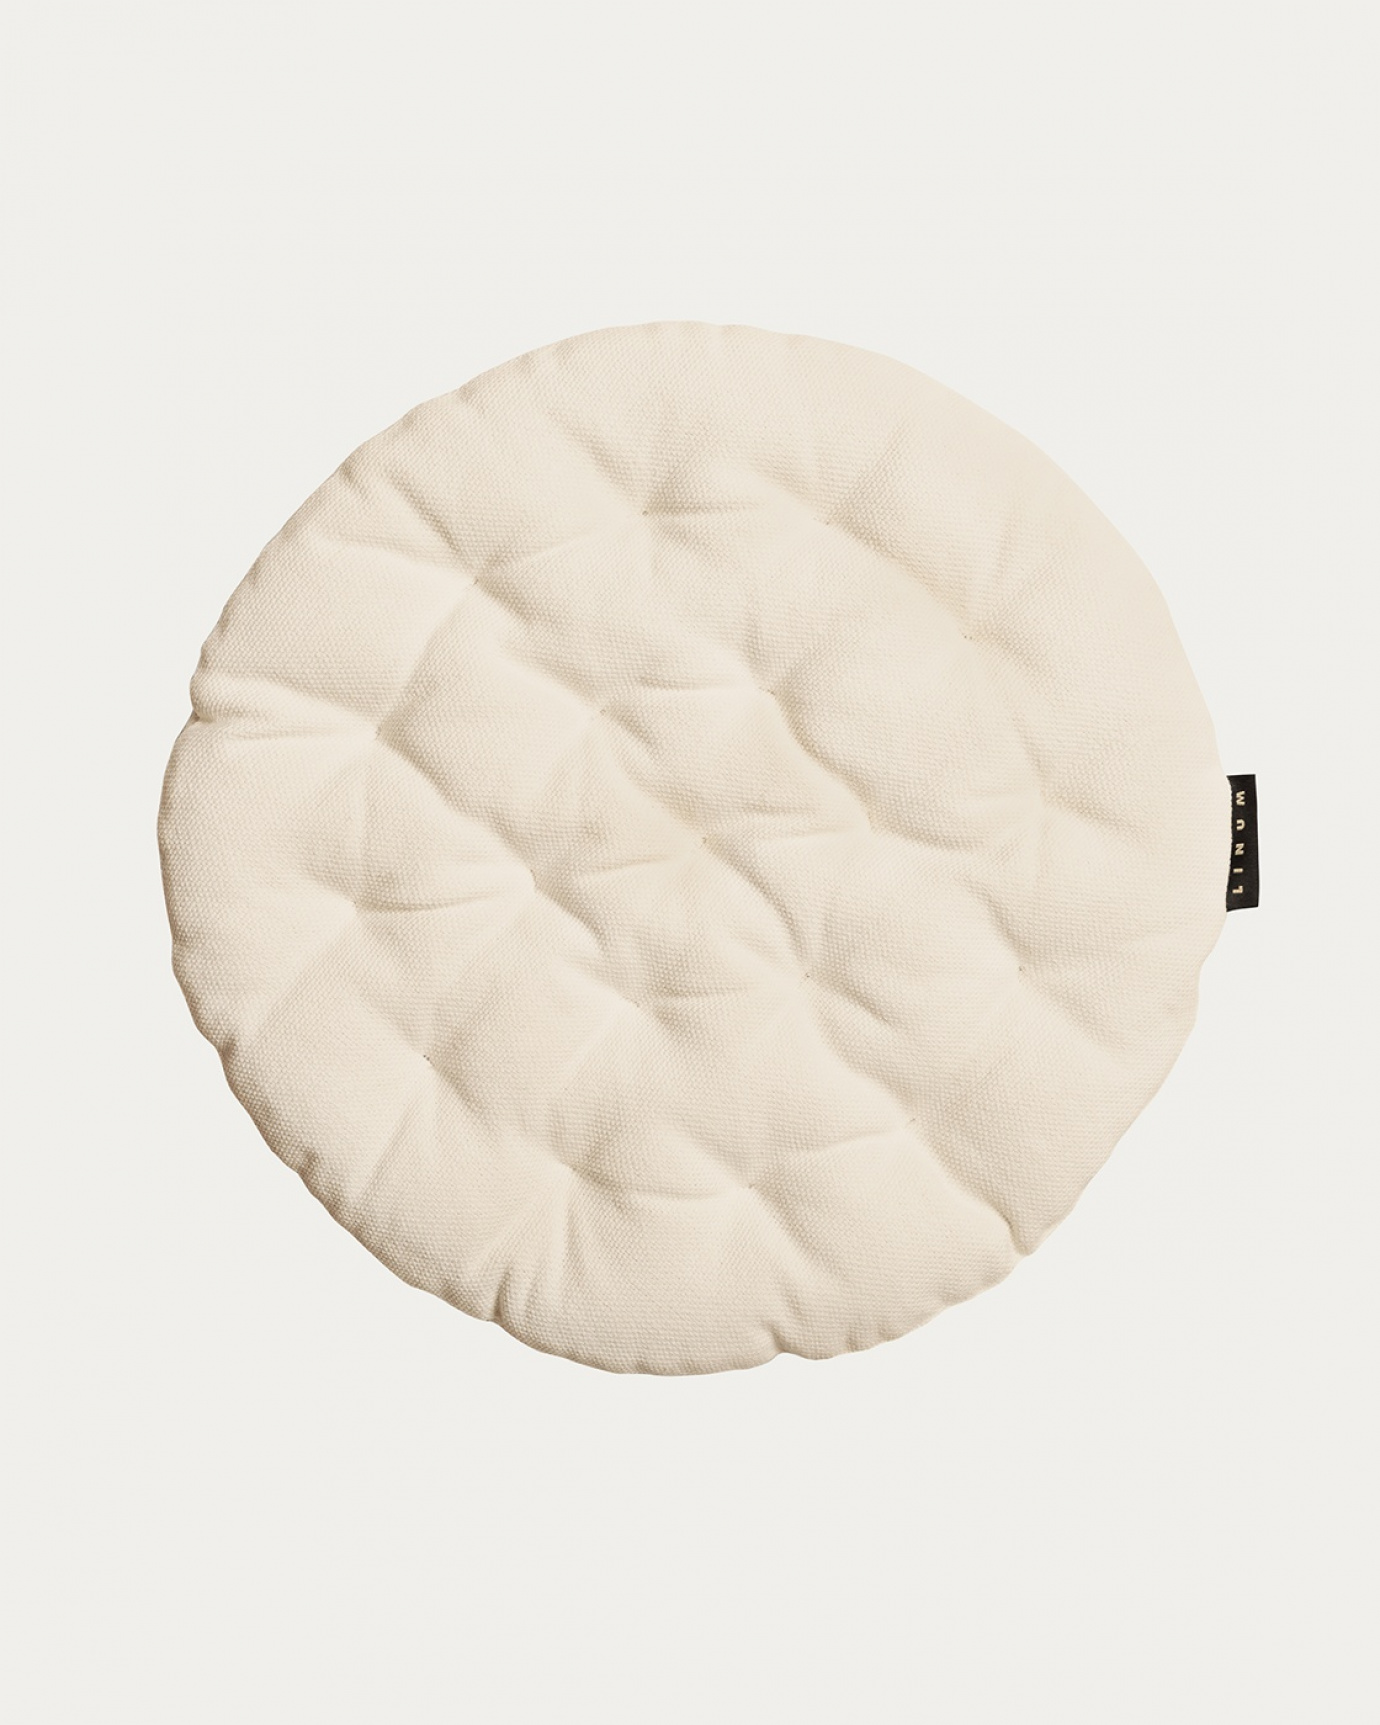 Immagine prodotto beige crema PEPPER cuscini sedie di cotone con imbottitura in poliestere di LINUM DESIGN. Dimensioni ø37 cm.